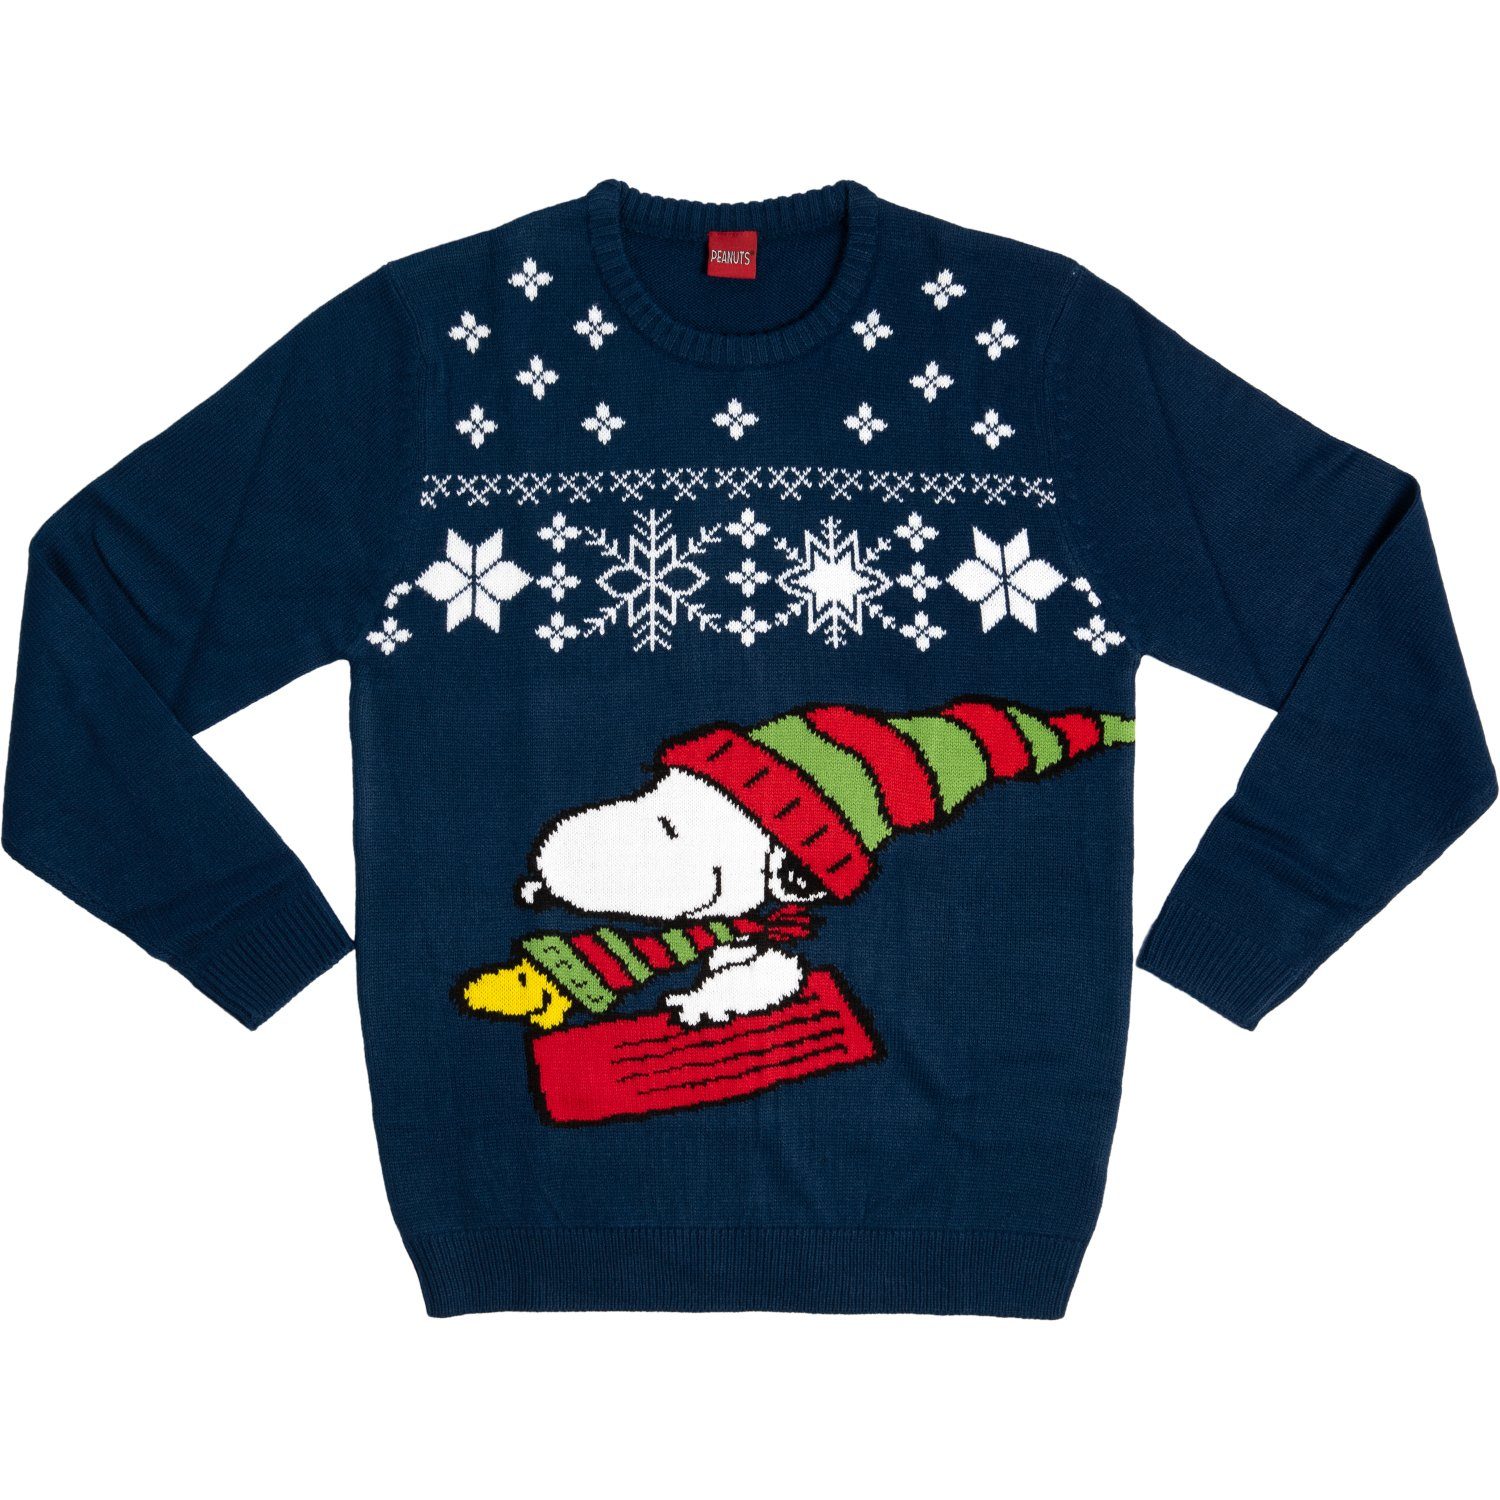 United Labels® Weihnachtssweatshirt »The Peanuts Weihnachtspullover Unisex  - Snoopy Winter Strick Pullover Sweatshirt Ugly Christmas Sweater  Weihnachten für Herren & Damen Blau« online kaufen | OTTO